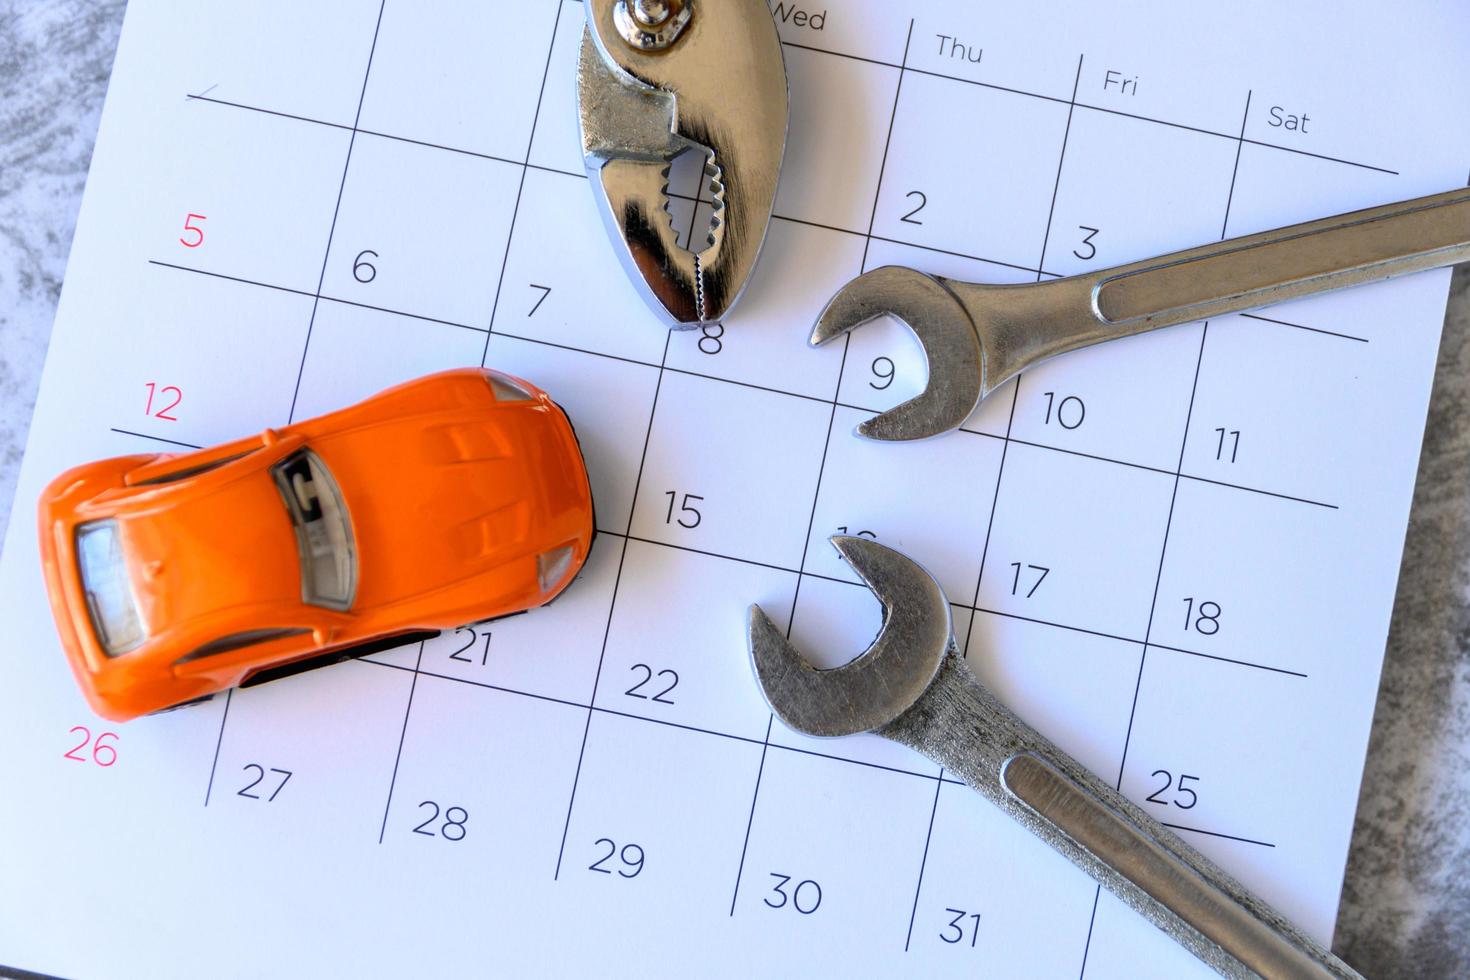 Schraubenschlüssel und Auto im Kalender mit Zahlen. Reparaturkonzept foto